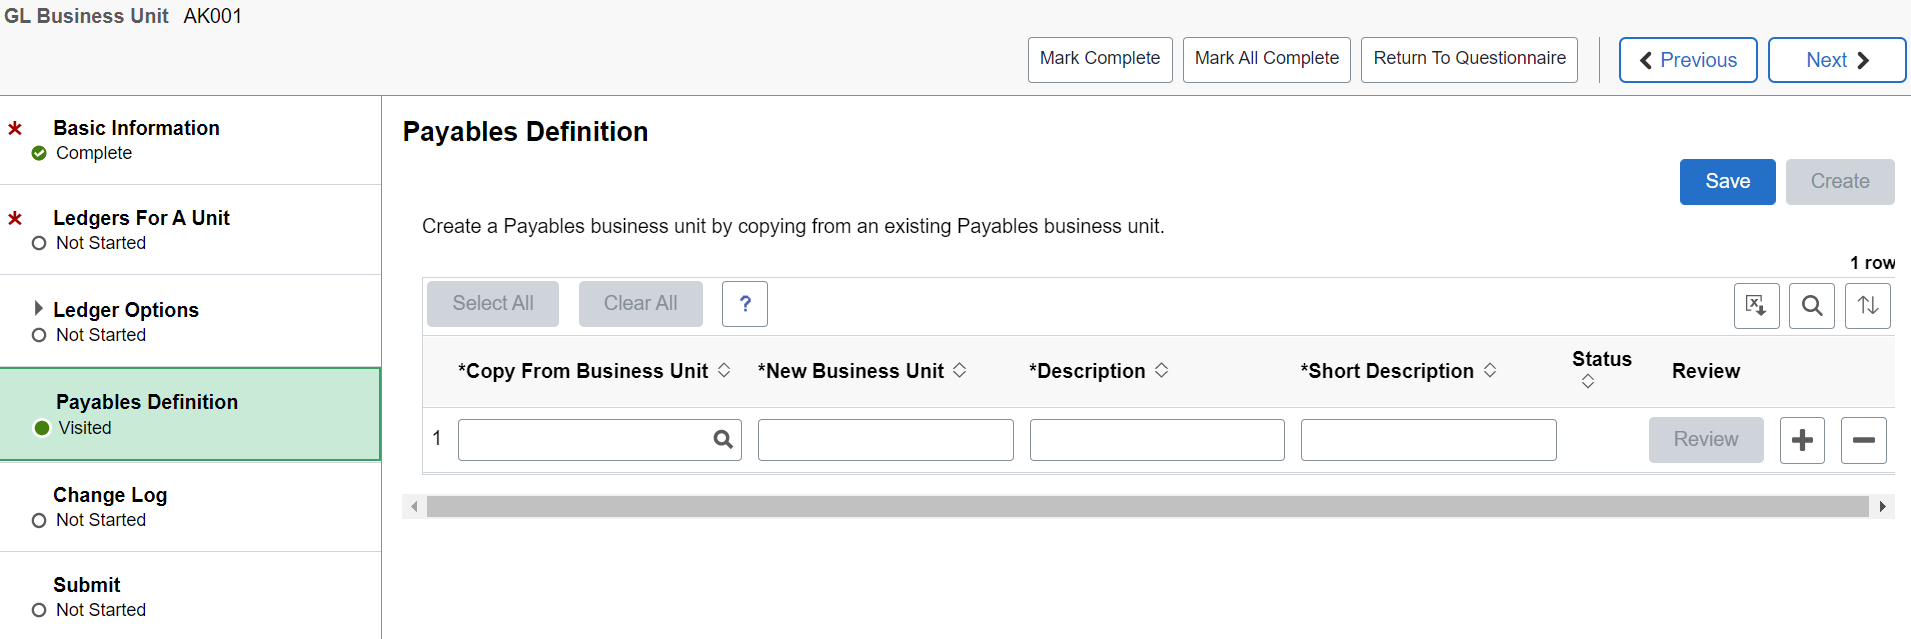 Business Unit Management - Payables Definition Page